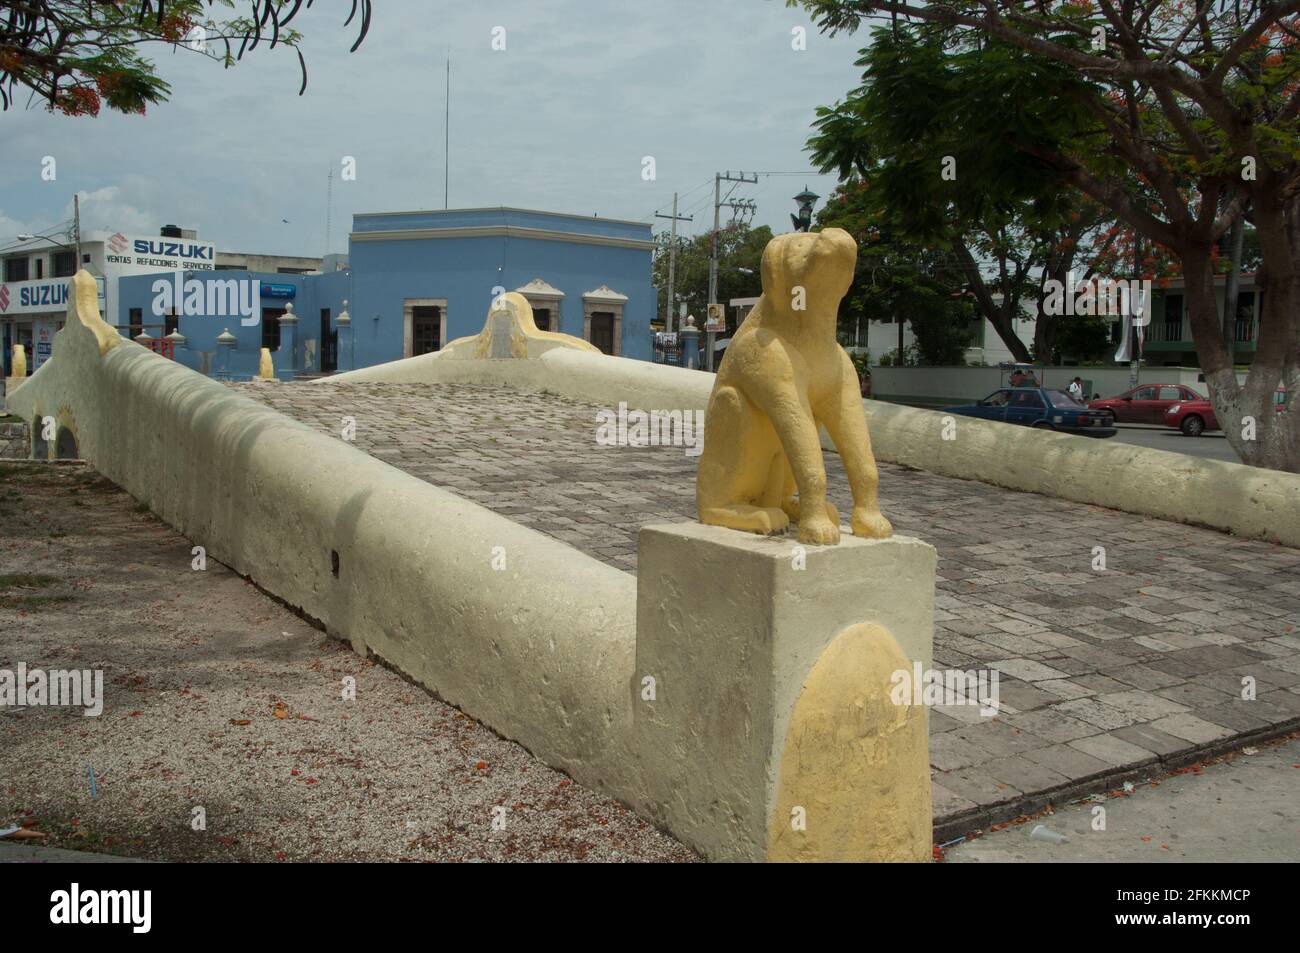 El llamado puente de las Mercedes o de los Perros se extiende por encima del canal de desagüe del barrio de Santa Ana en Campeche. Ciera uno de los ex Stock Photo